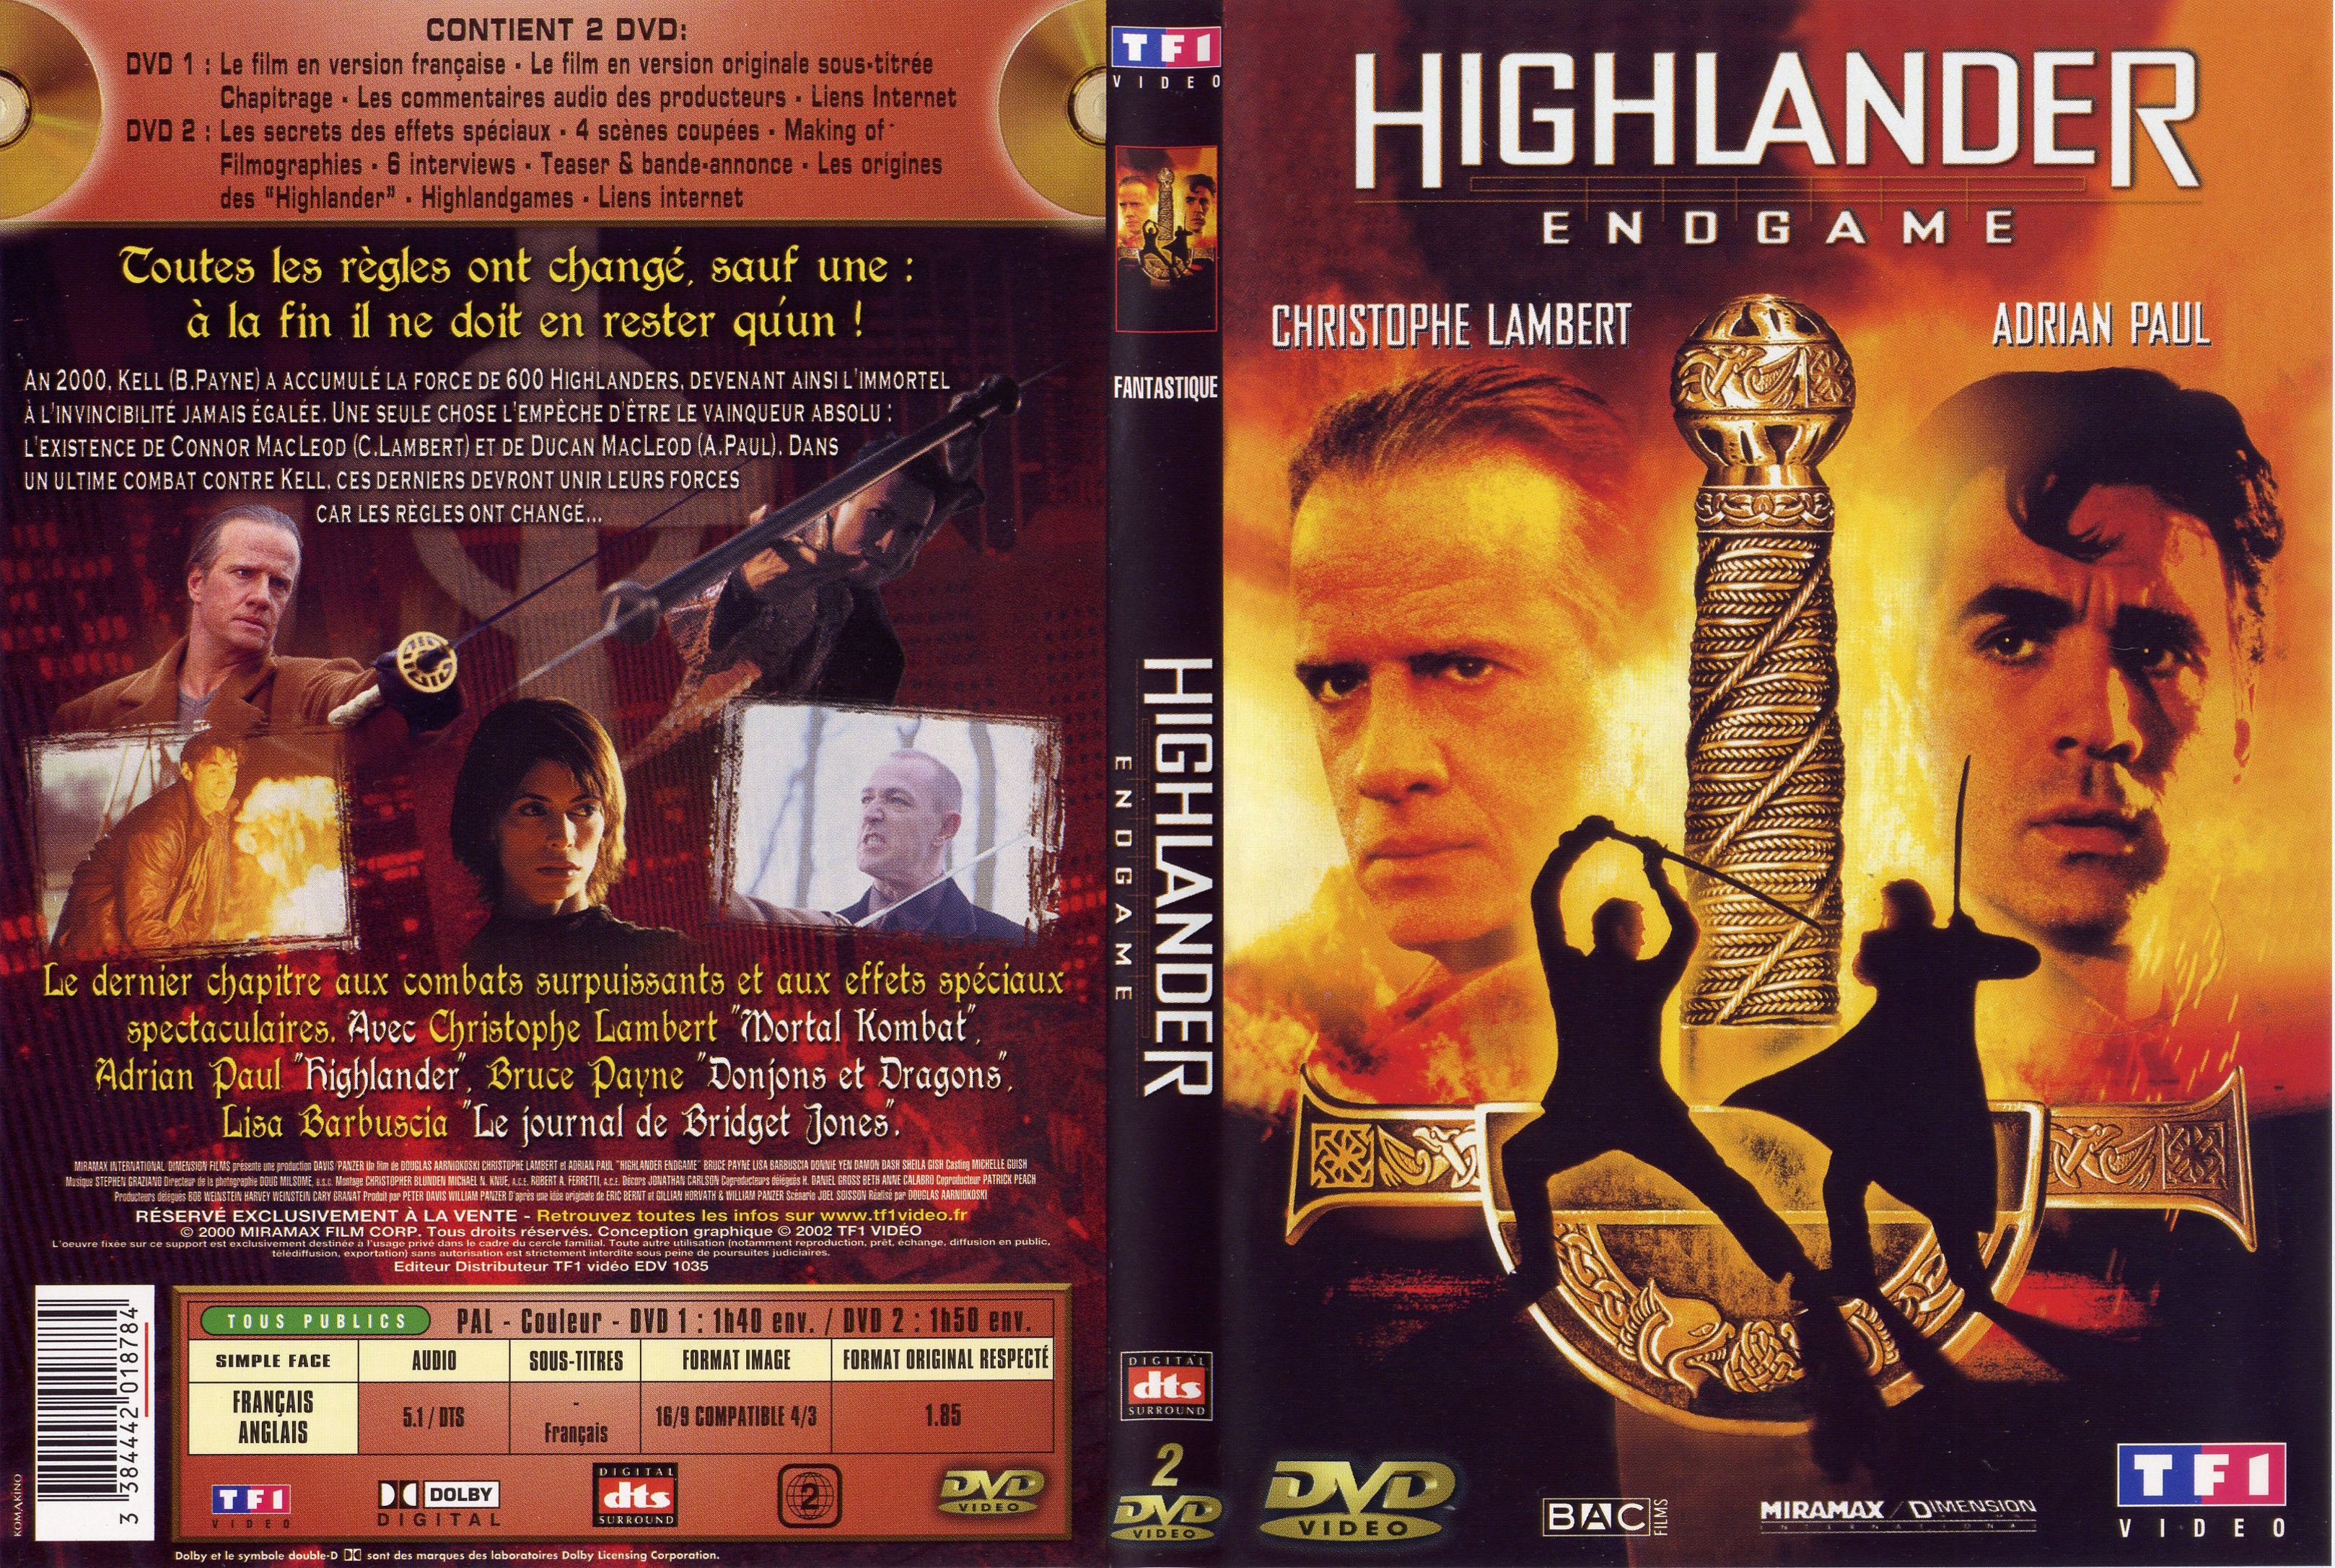 Jaquette DVD Highlander endgame